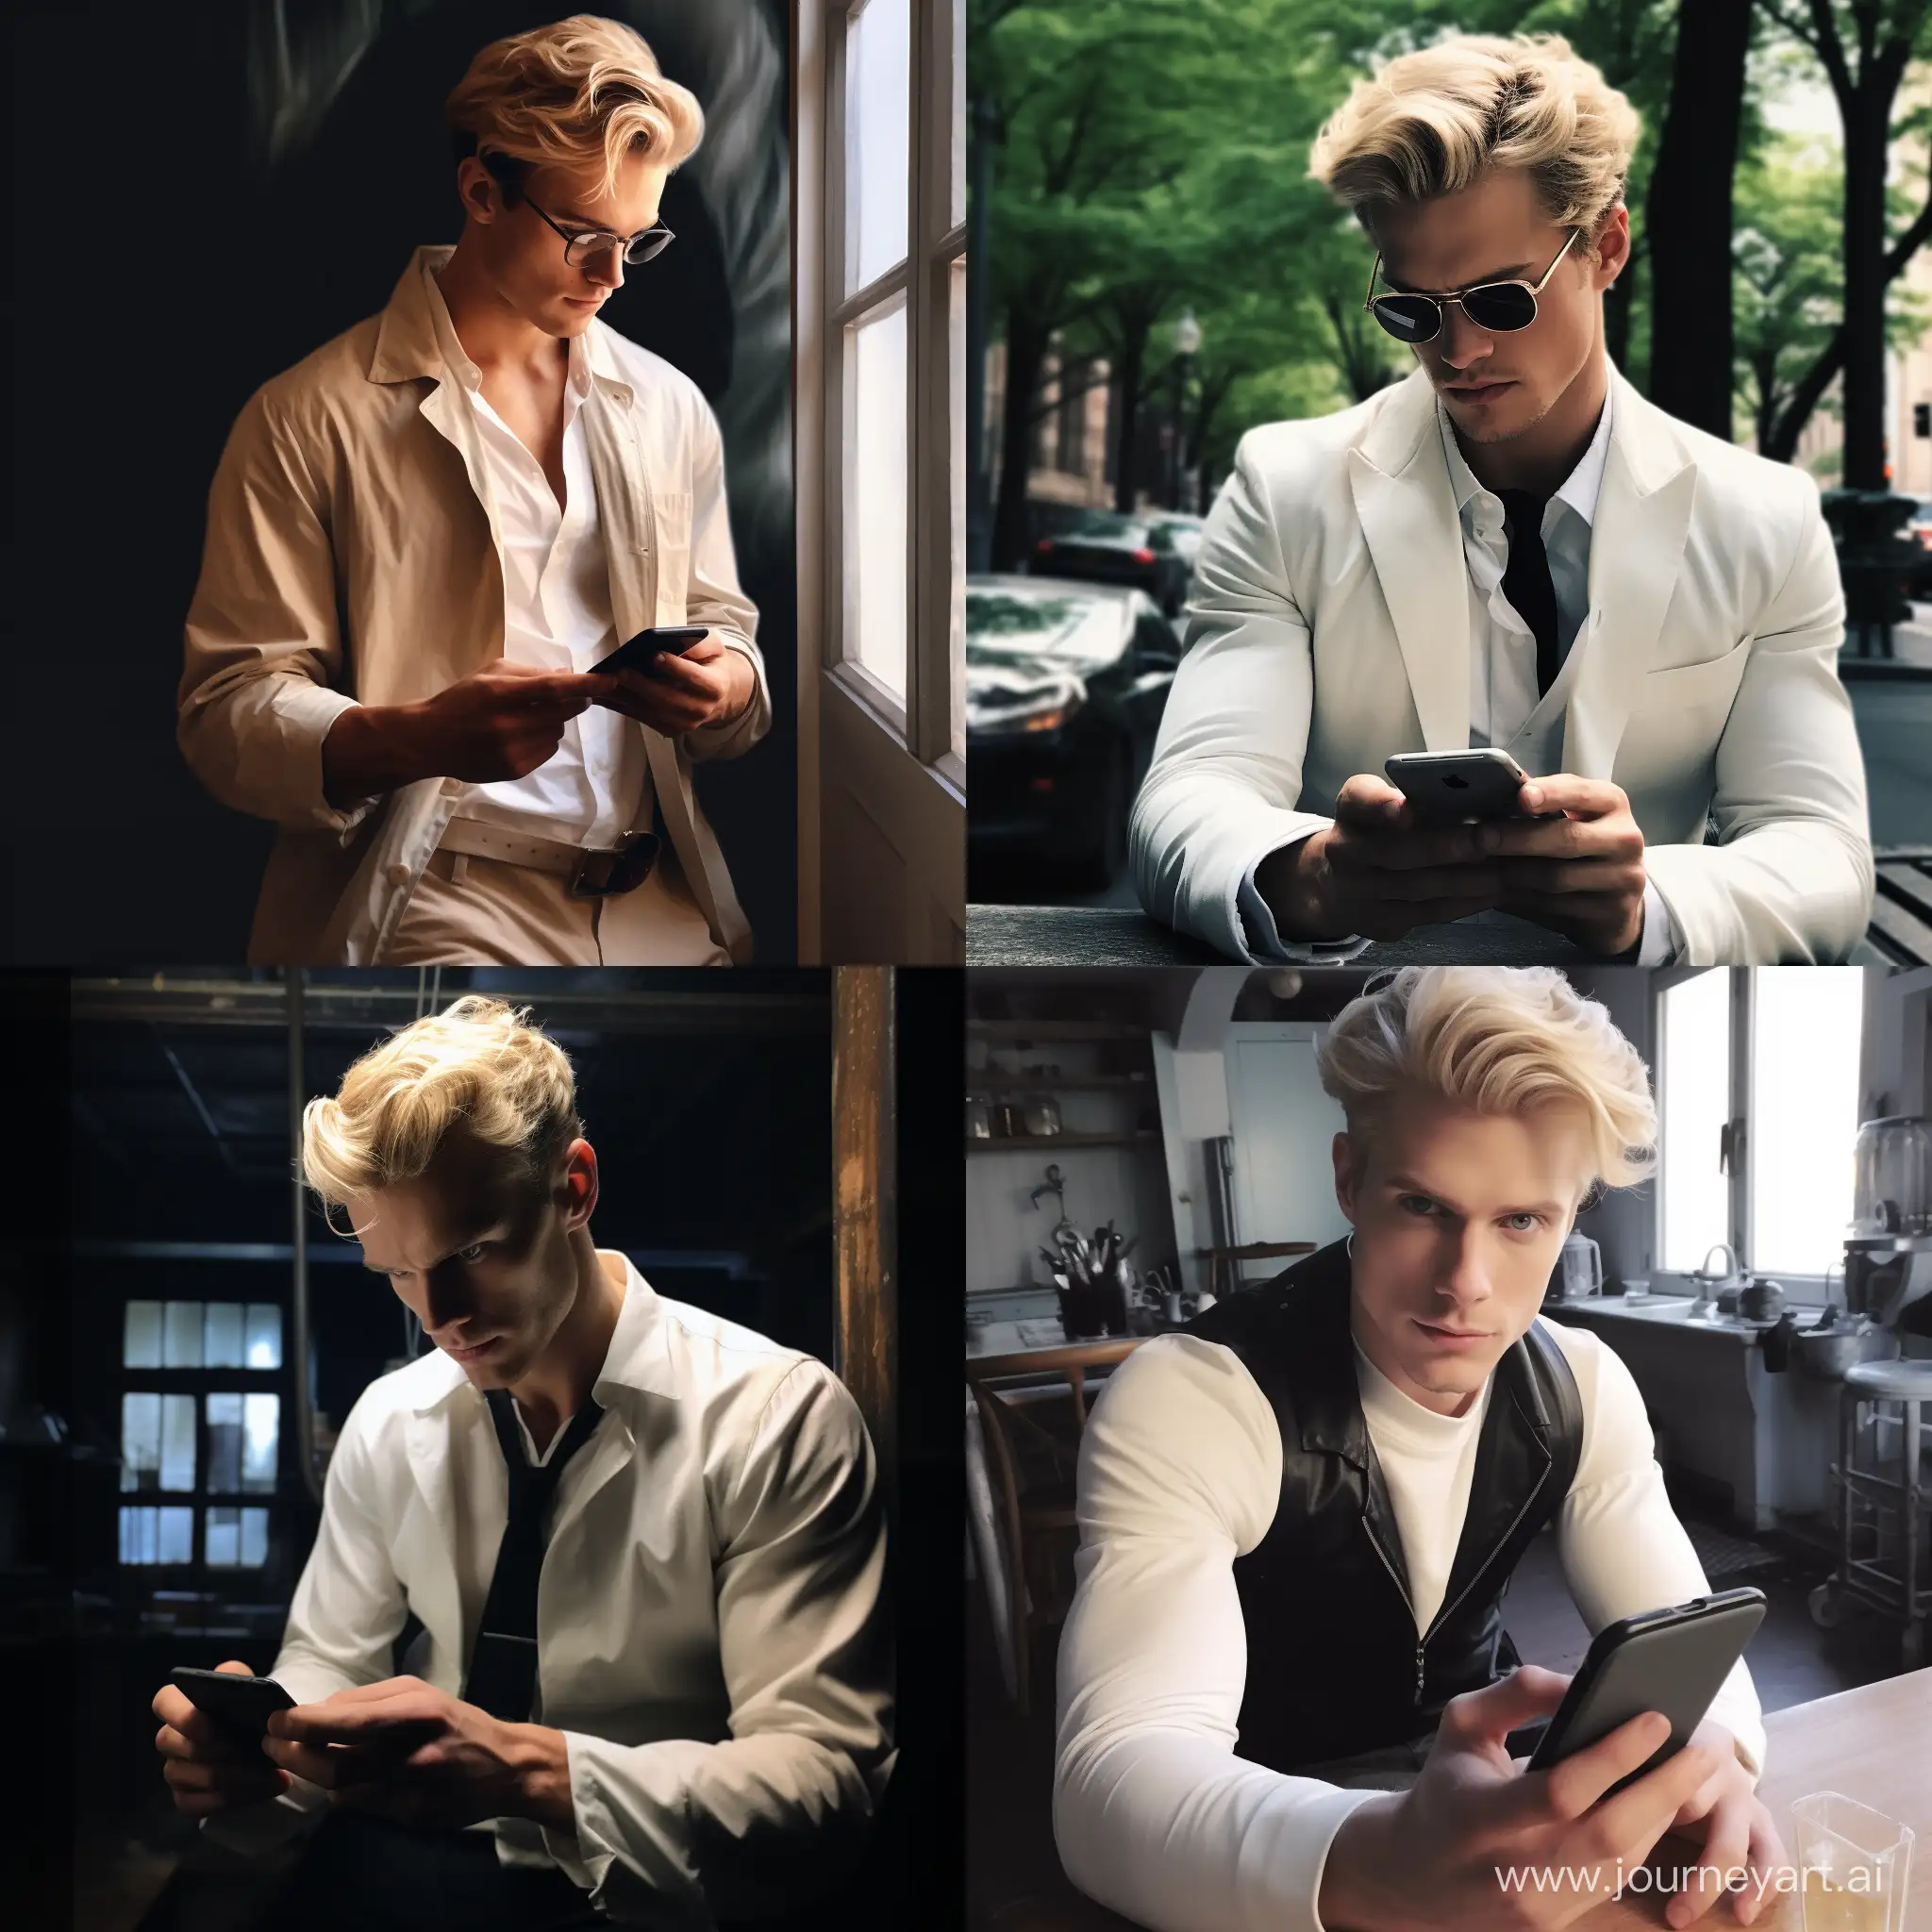 Phone photo, blond, handsome, scientist